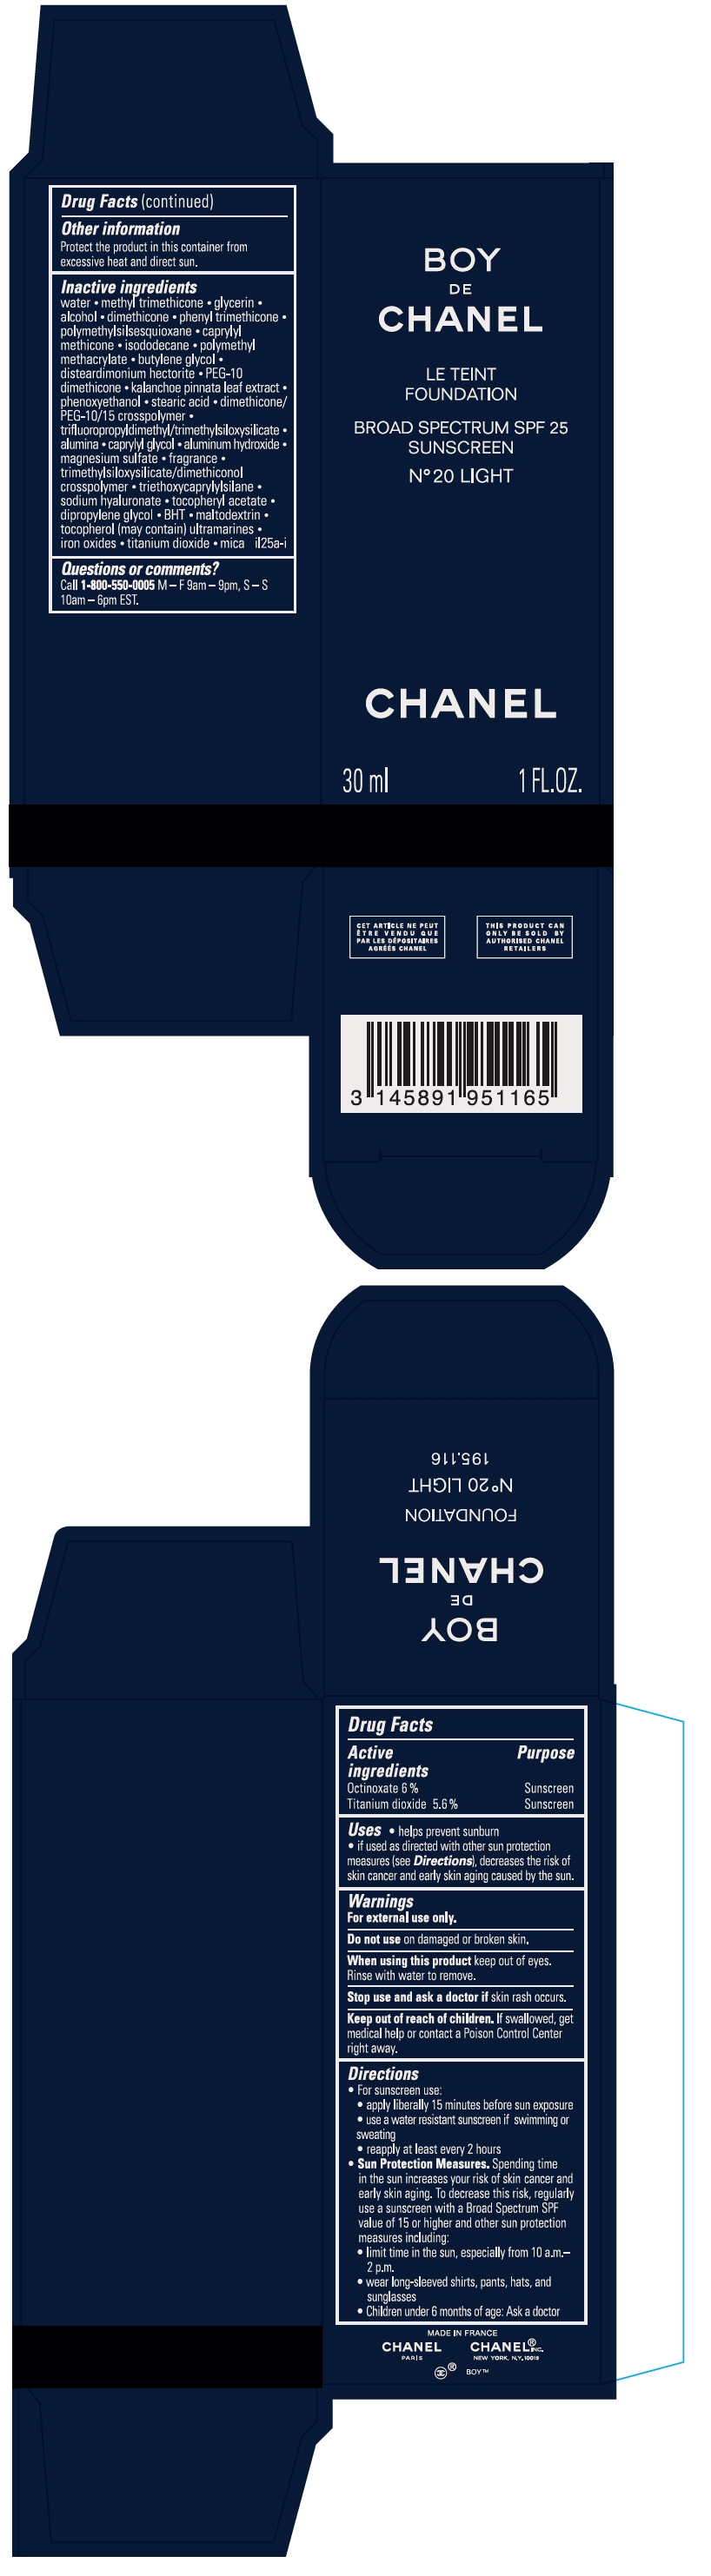 PRINCIPAL DISPLAY PANEL - 30 ml Bottle Carton - N°20 Light